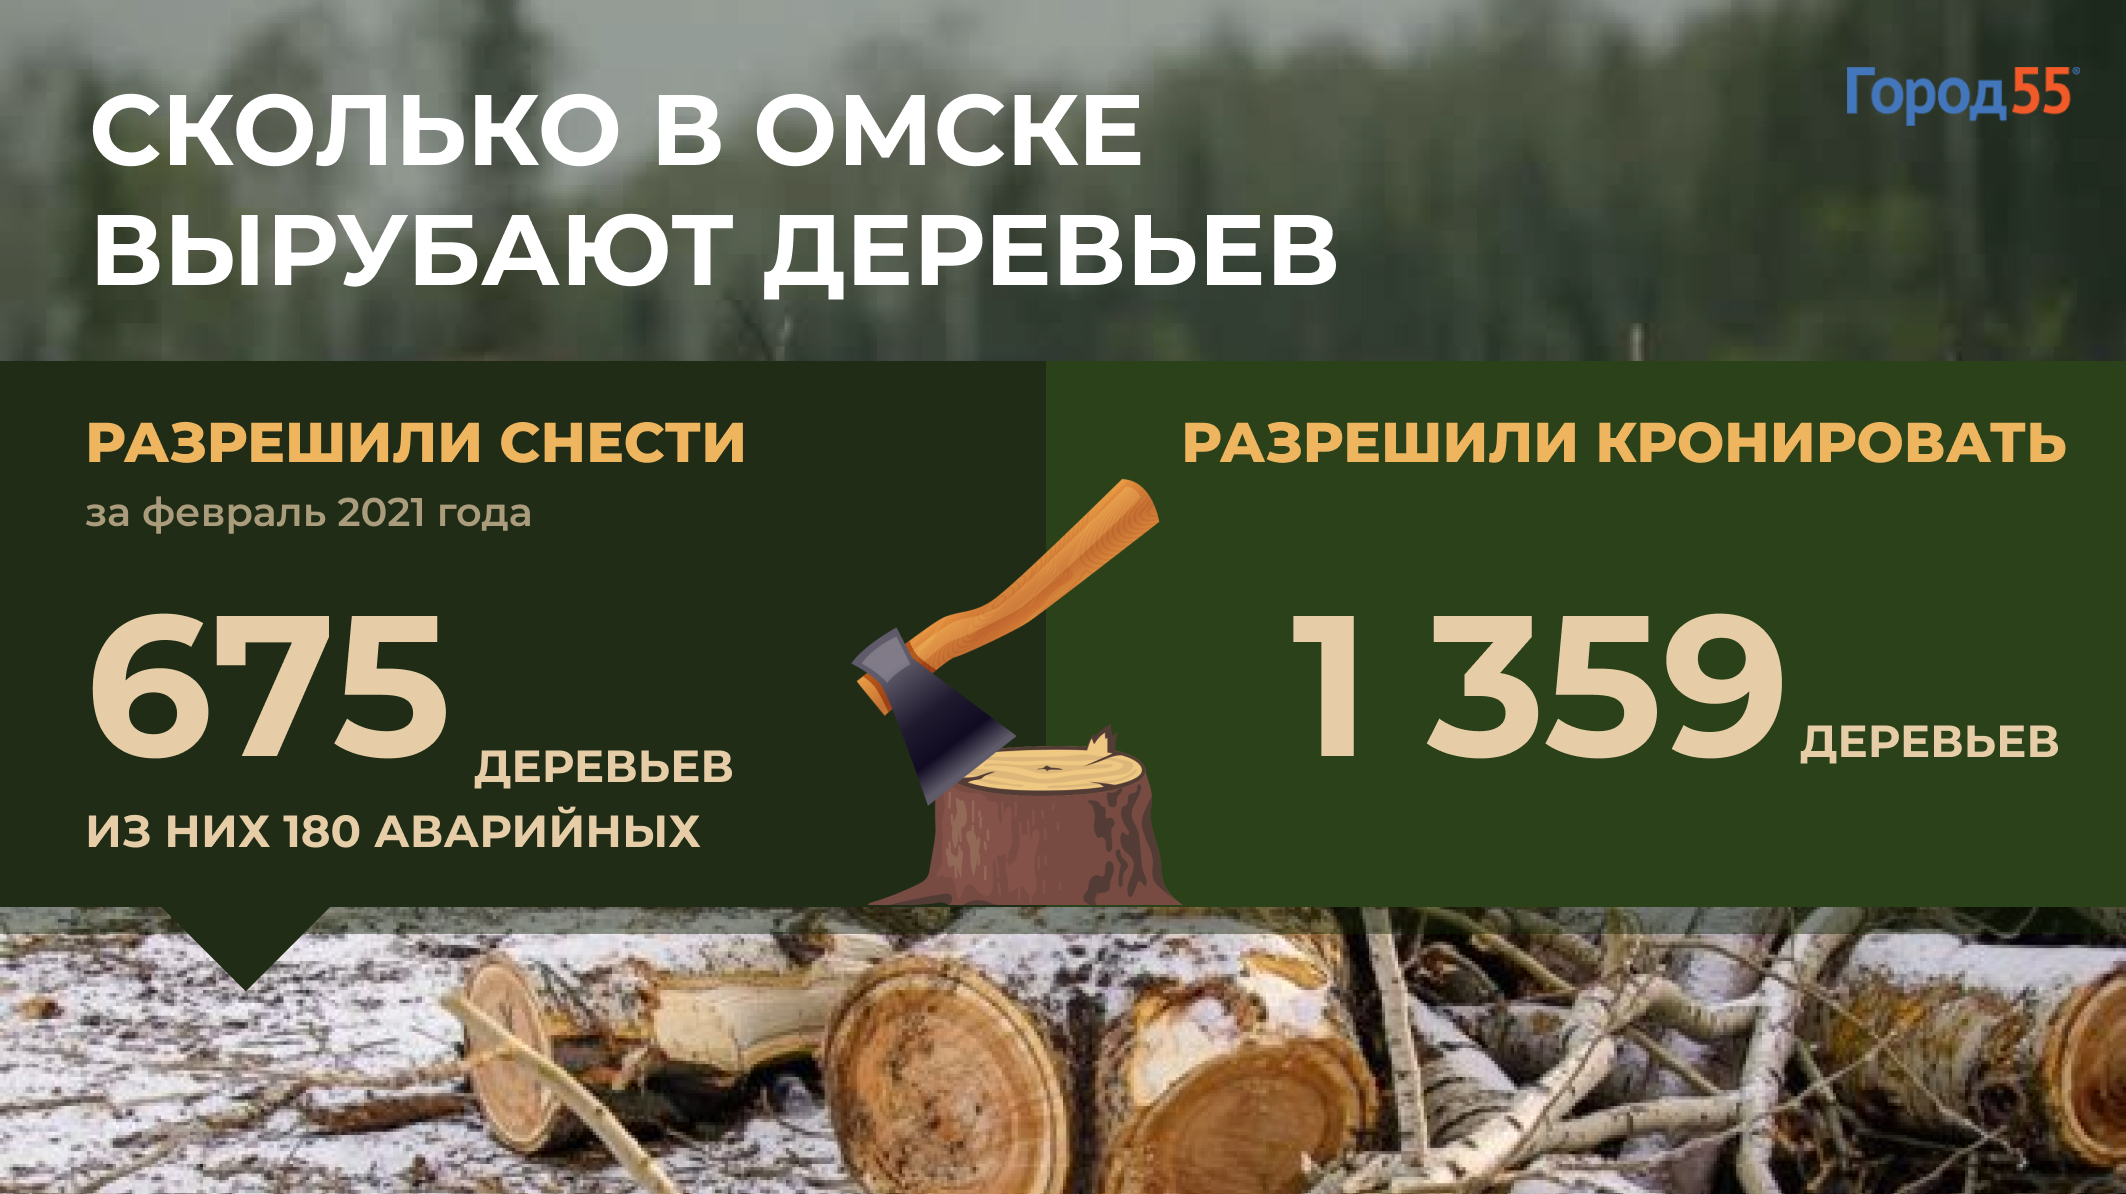 Омск лишится еще 675 деревьев. Где пройдут вырубки